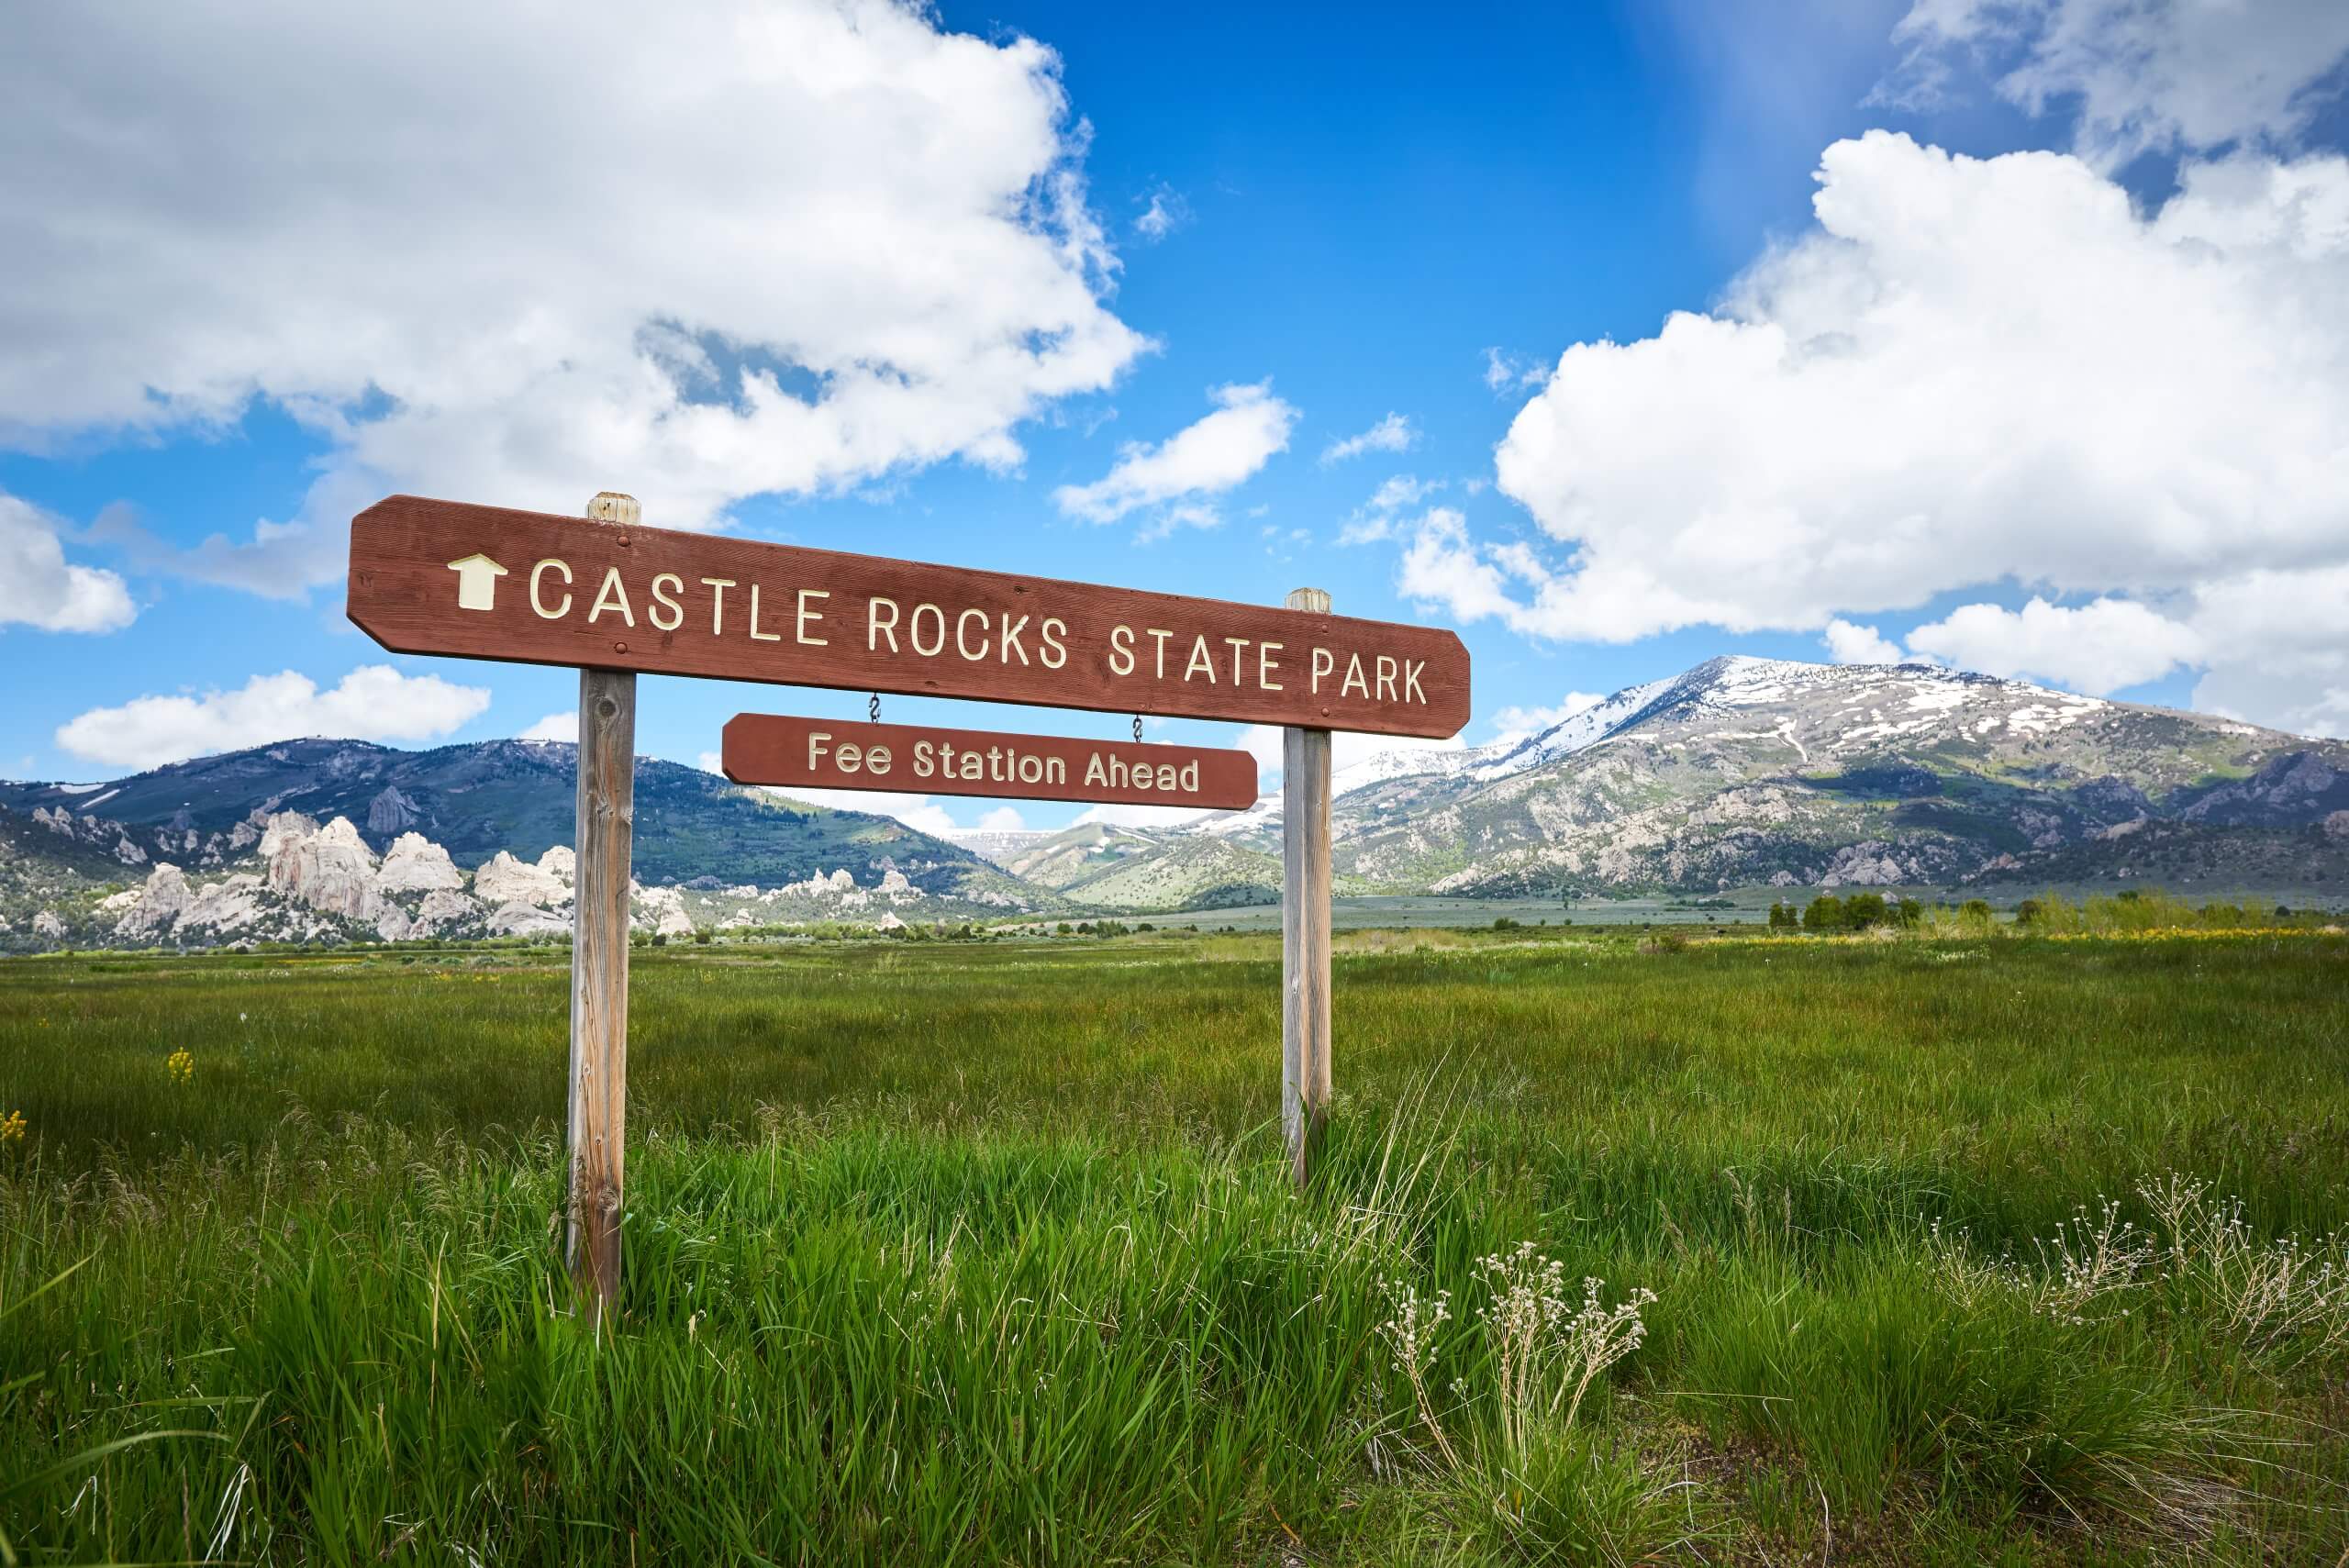 Sign entrance to Castle Rocks State Park.